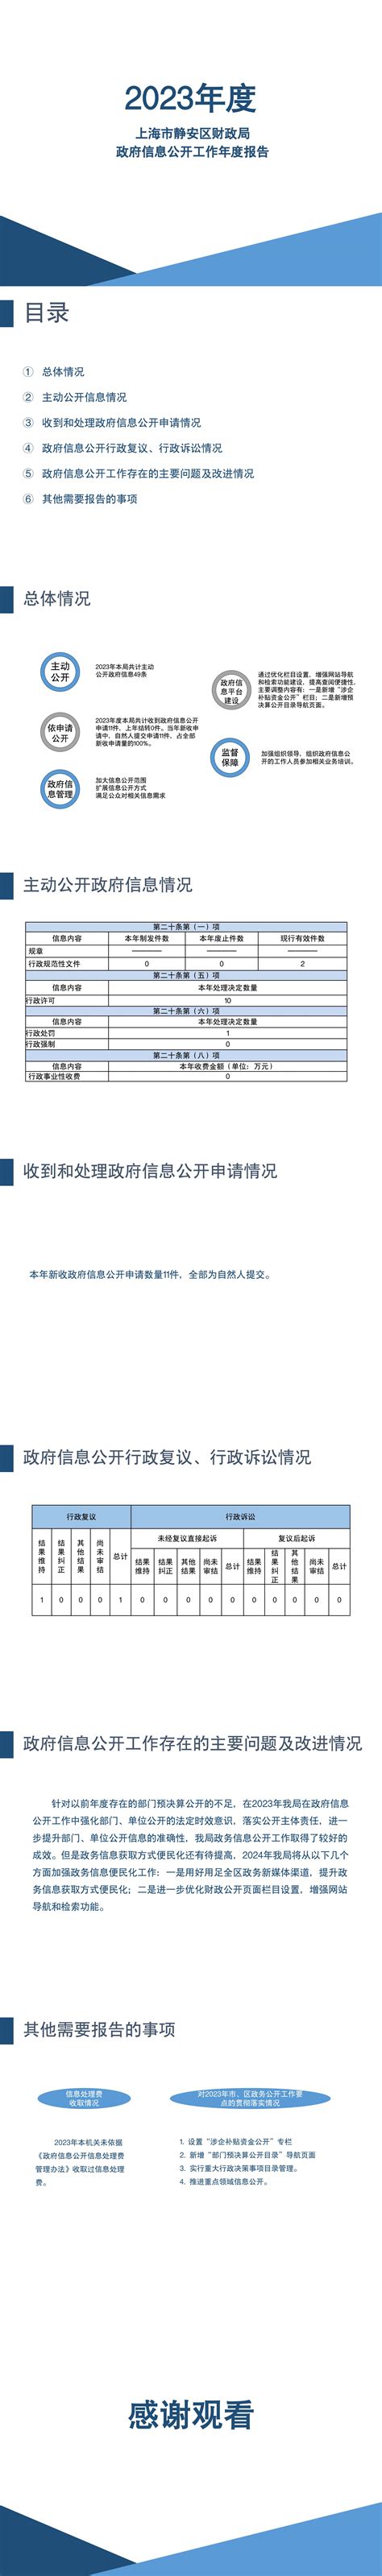 期待值拉满！静安区档案馆新馆开放在即，居然还是“半透明”的？——上海热线HOT频道